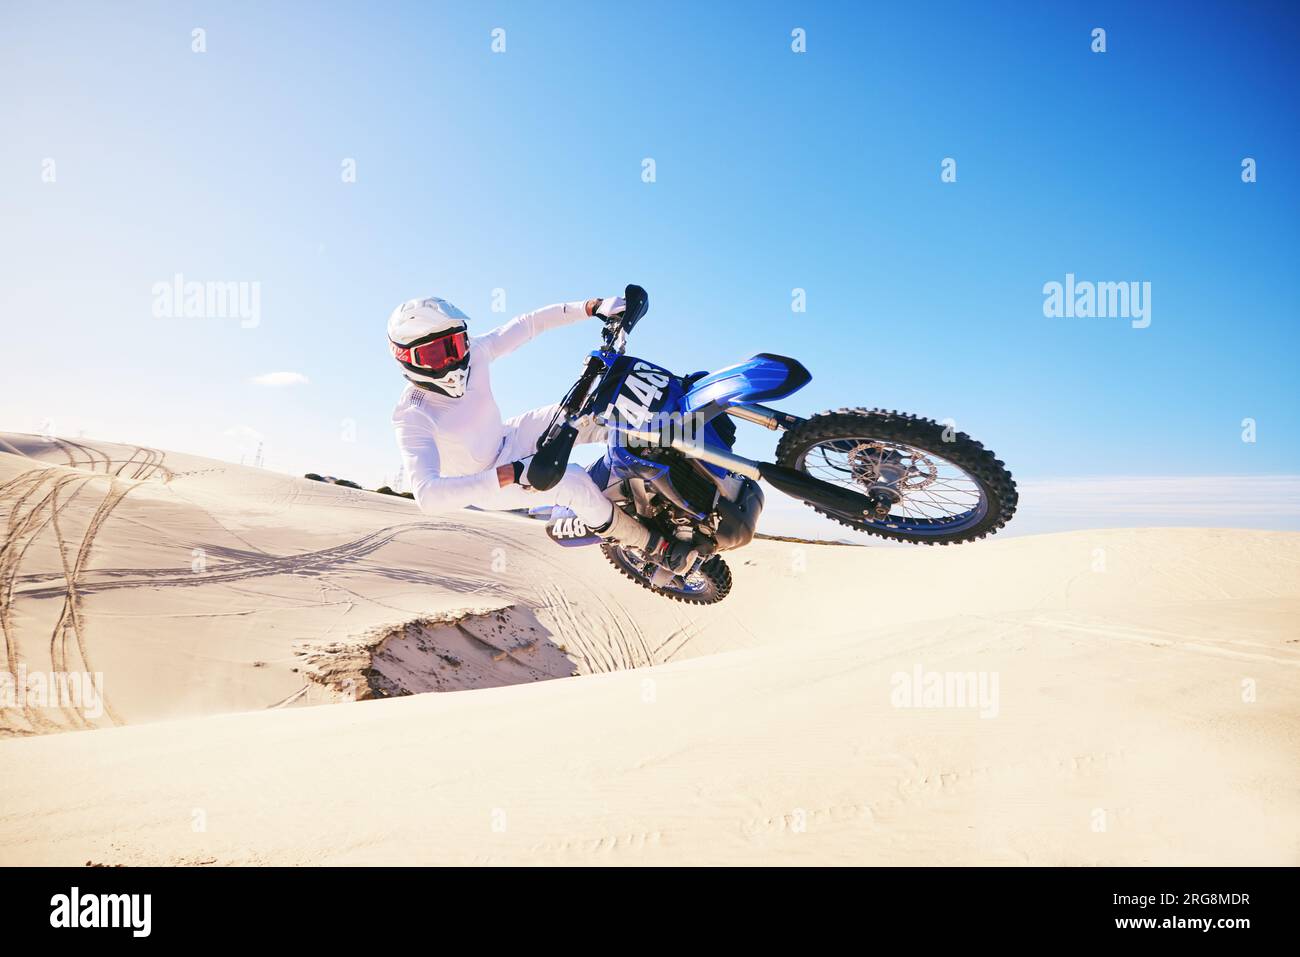 Sabbia, sport motoristici e uomo in aria con moto per adrenalina, avventura e libertà nel deserto. Azione, sport estremi e persona maschile in bicicletta Foto Stock